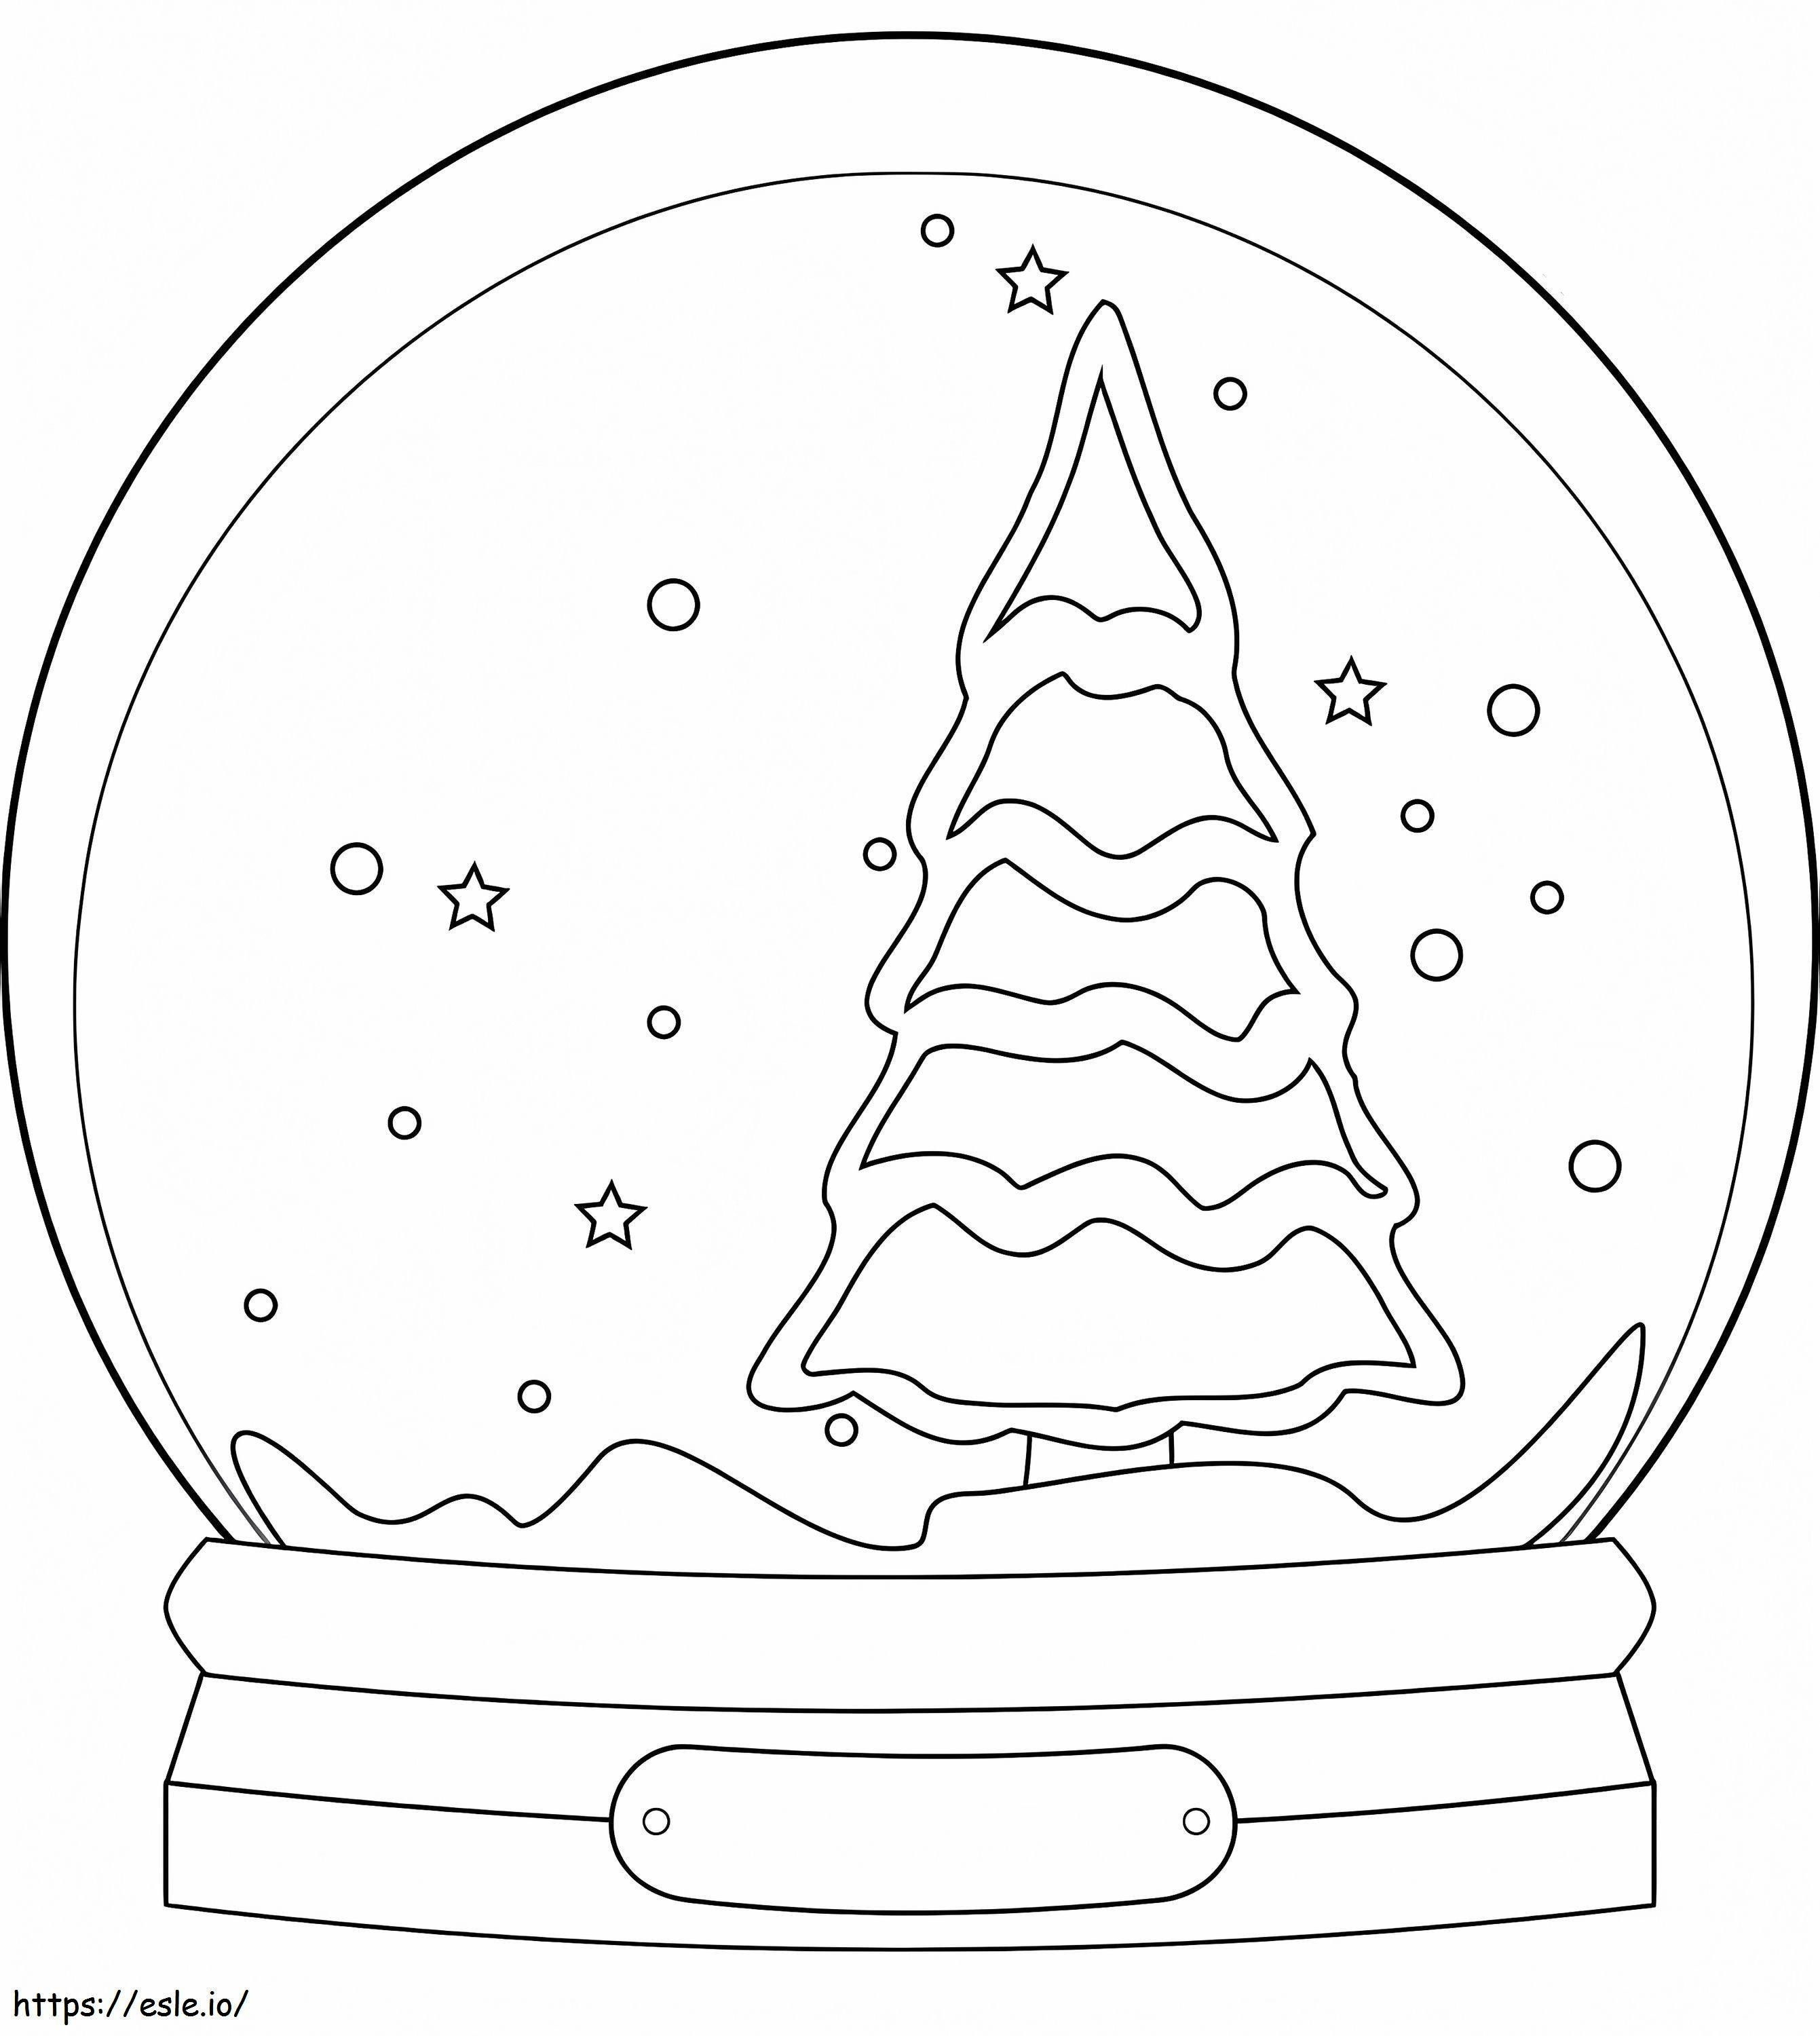 Schneekugel mit Weihnachtsbaum ausmalbilder